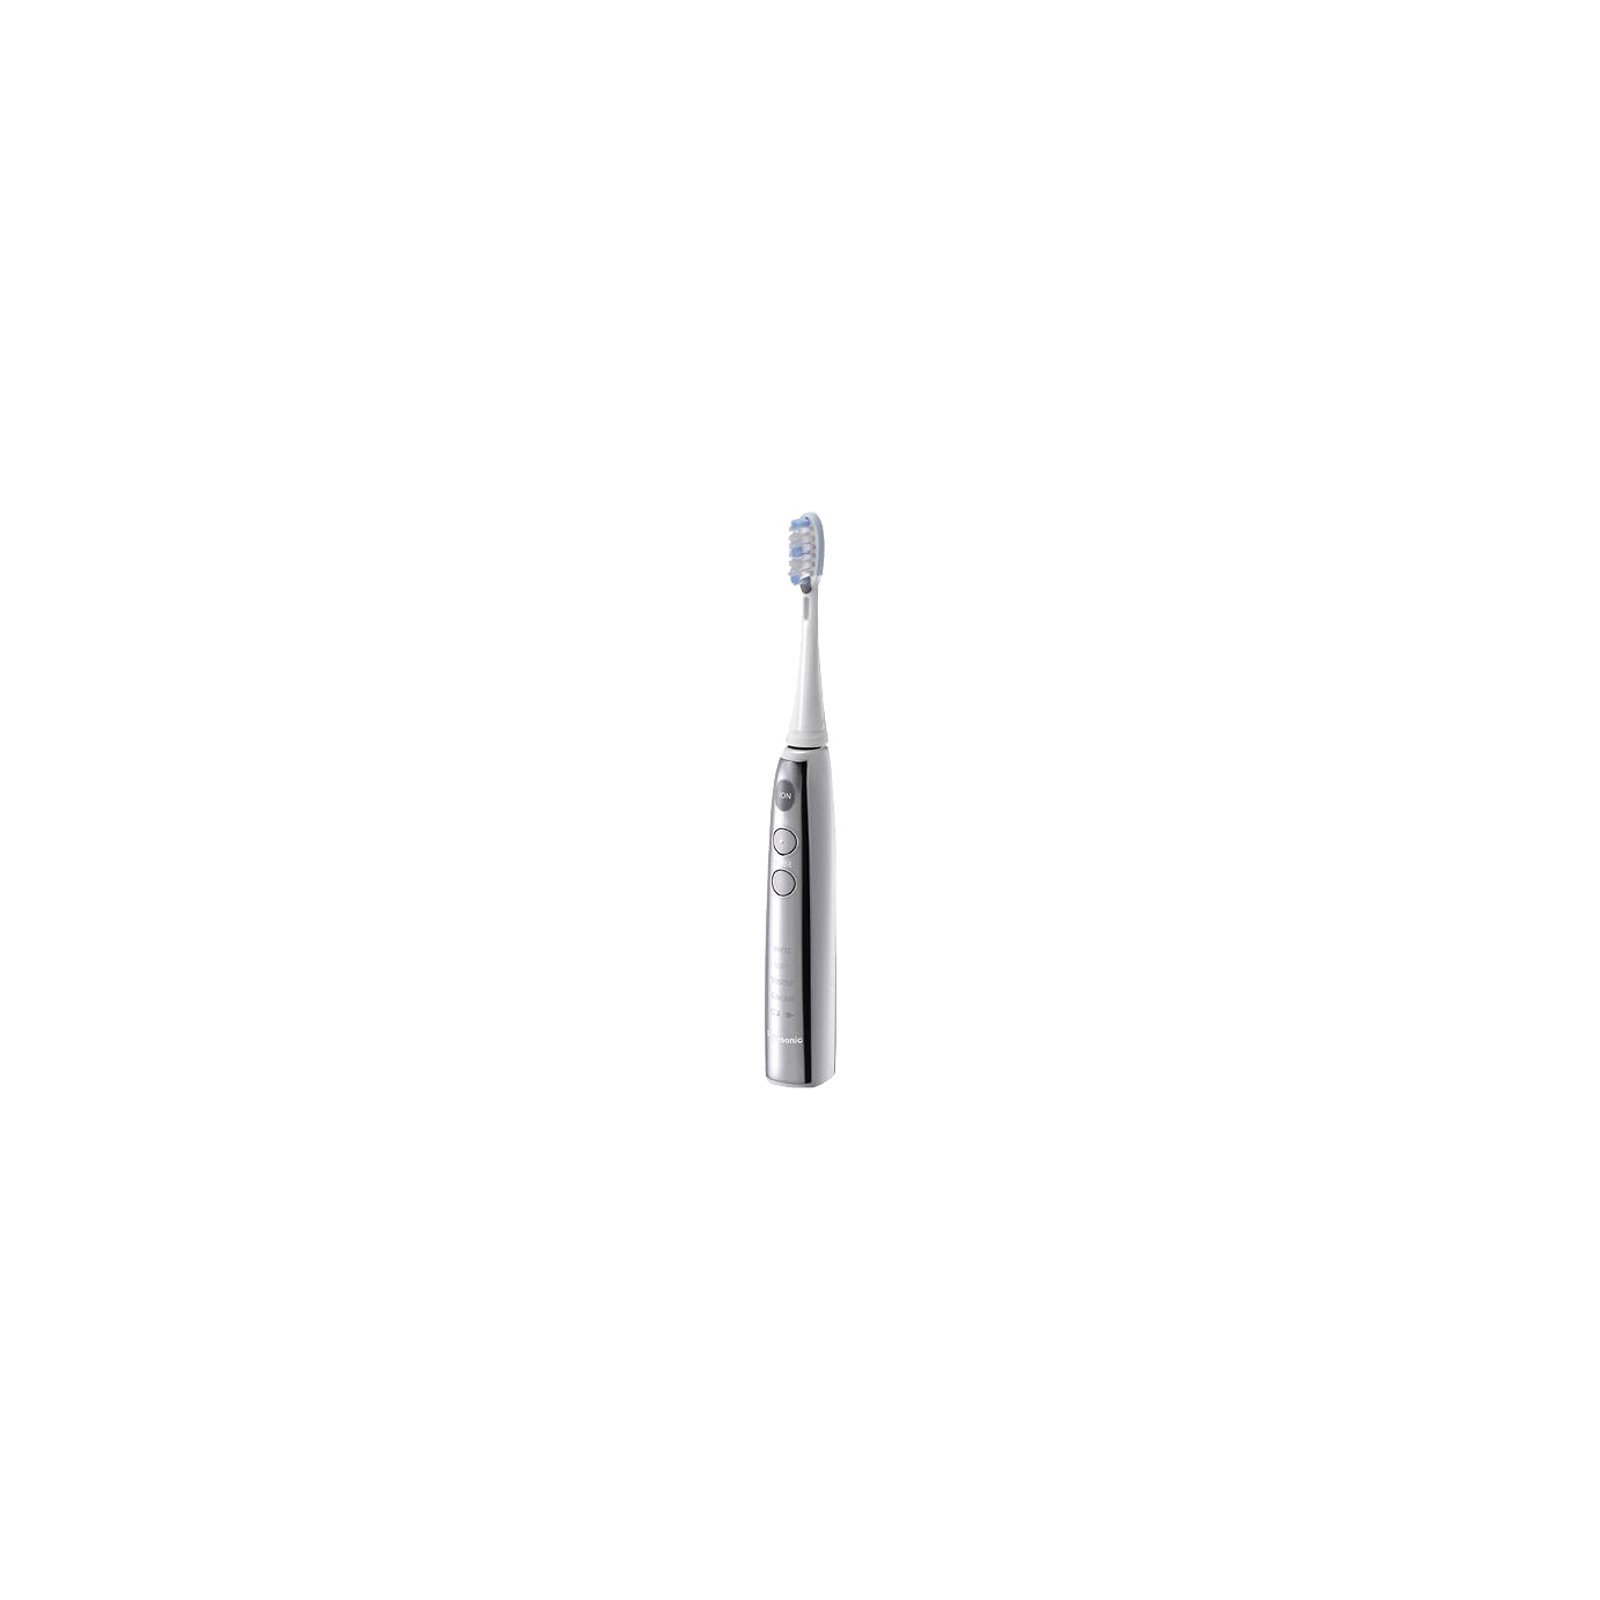 Электрическая зубная щетка Panasonic EW-DE92-S820